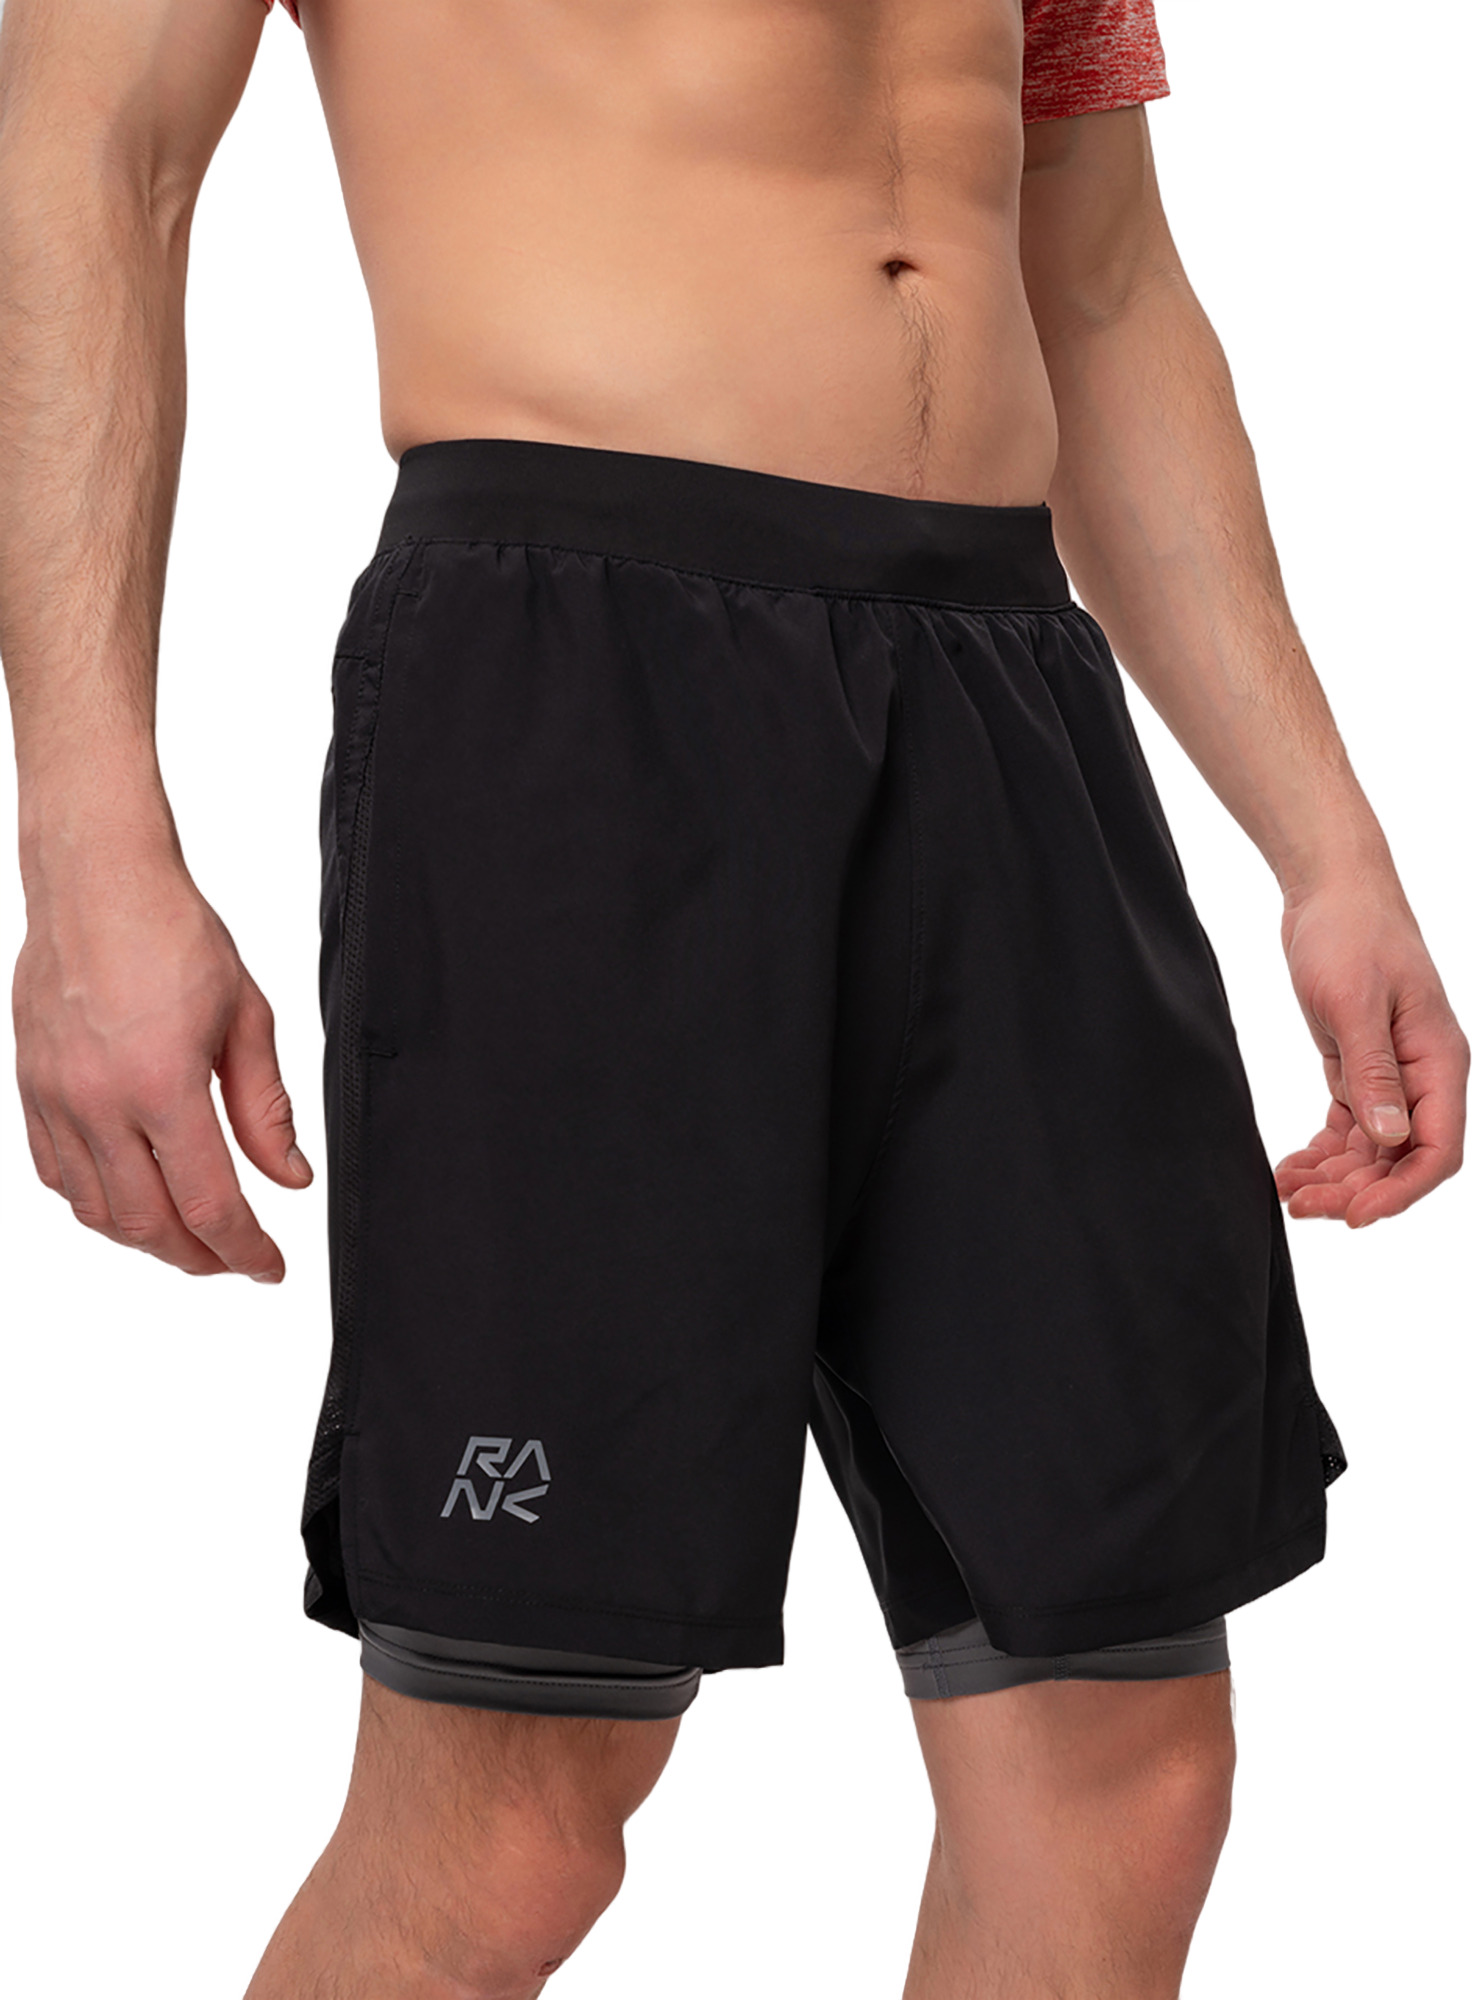 Спортивные шорты мужские RANK 2-in-1 Short черные L